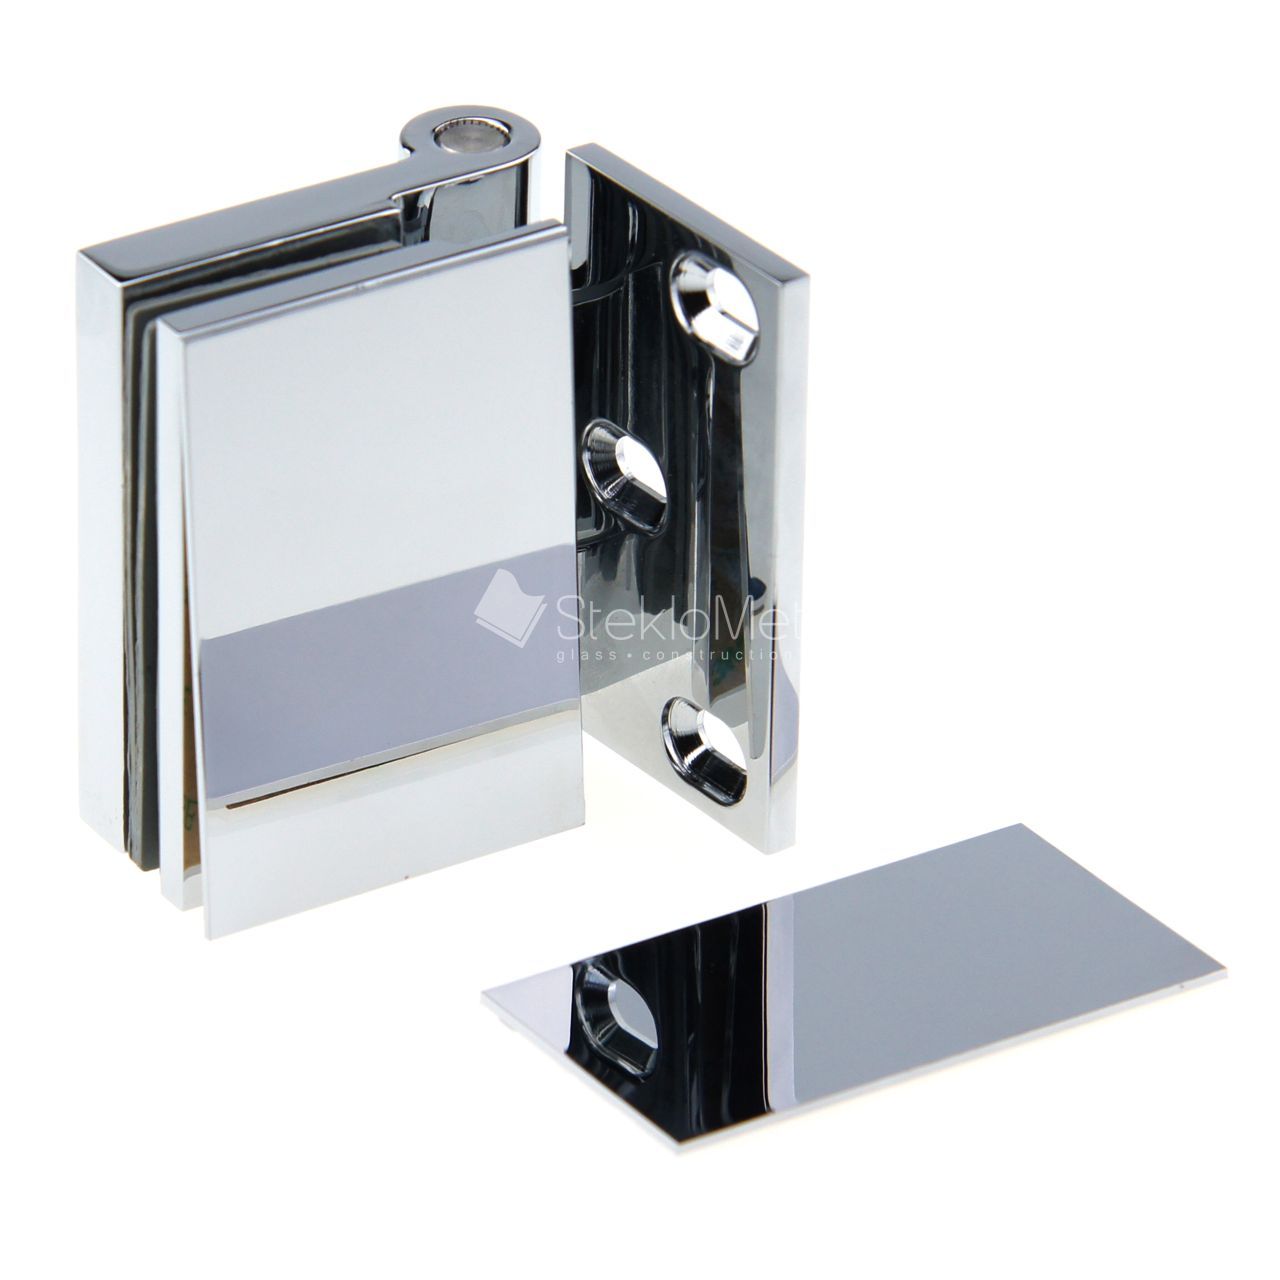 Петля для душевой двери стекло-стена 90гр. L/R (левая/правая) SM-05050103